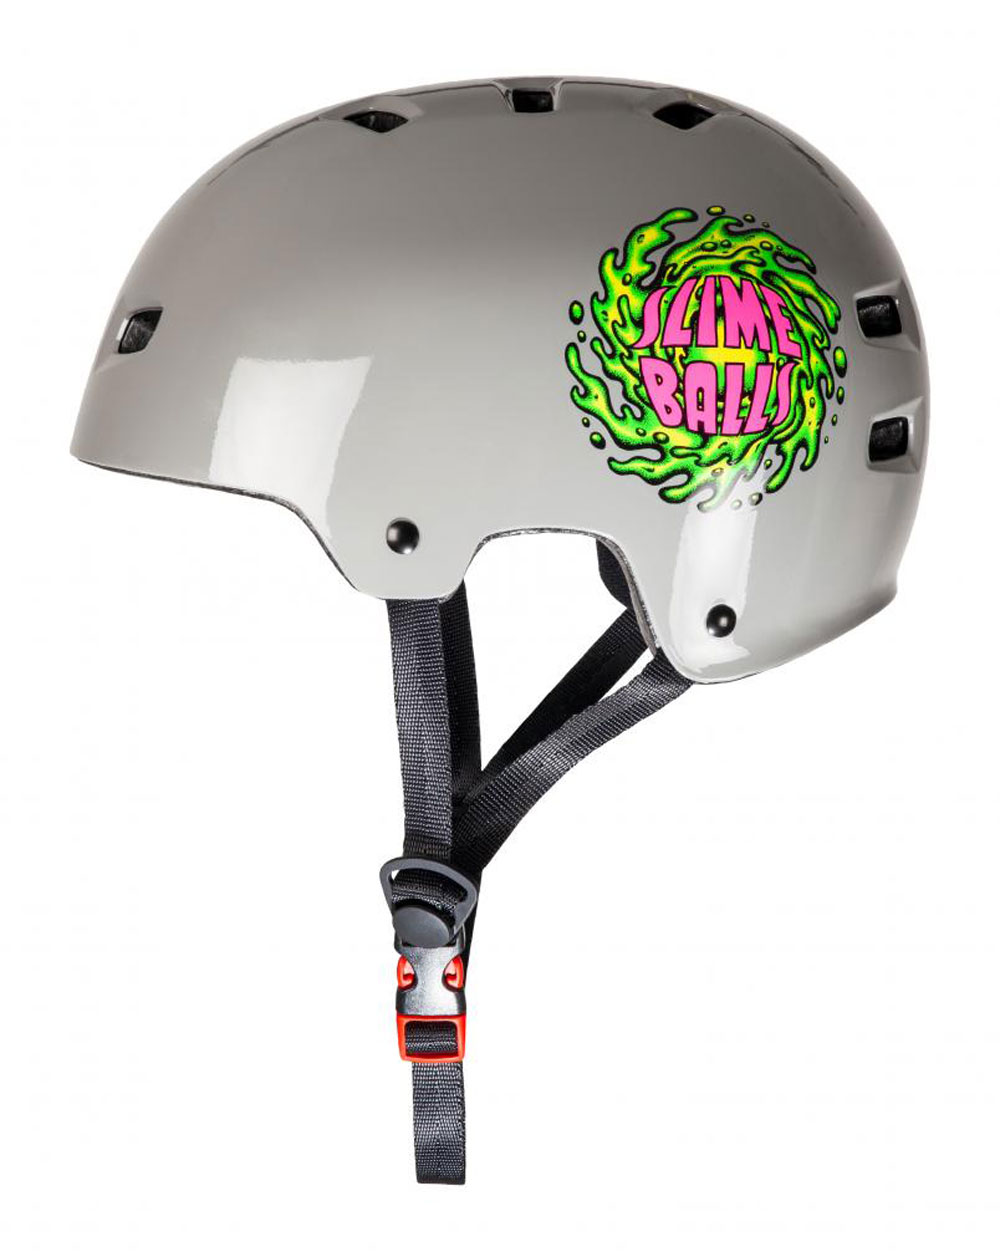 Bullet Safety Gear Bullet x Slime Balls Slime Logo Skateboard Helmet Grey